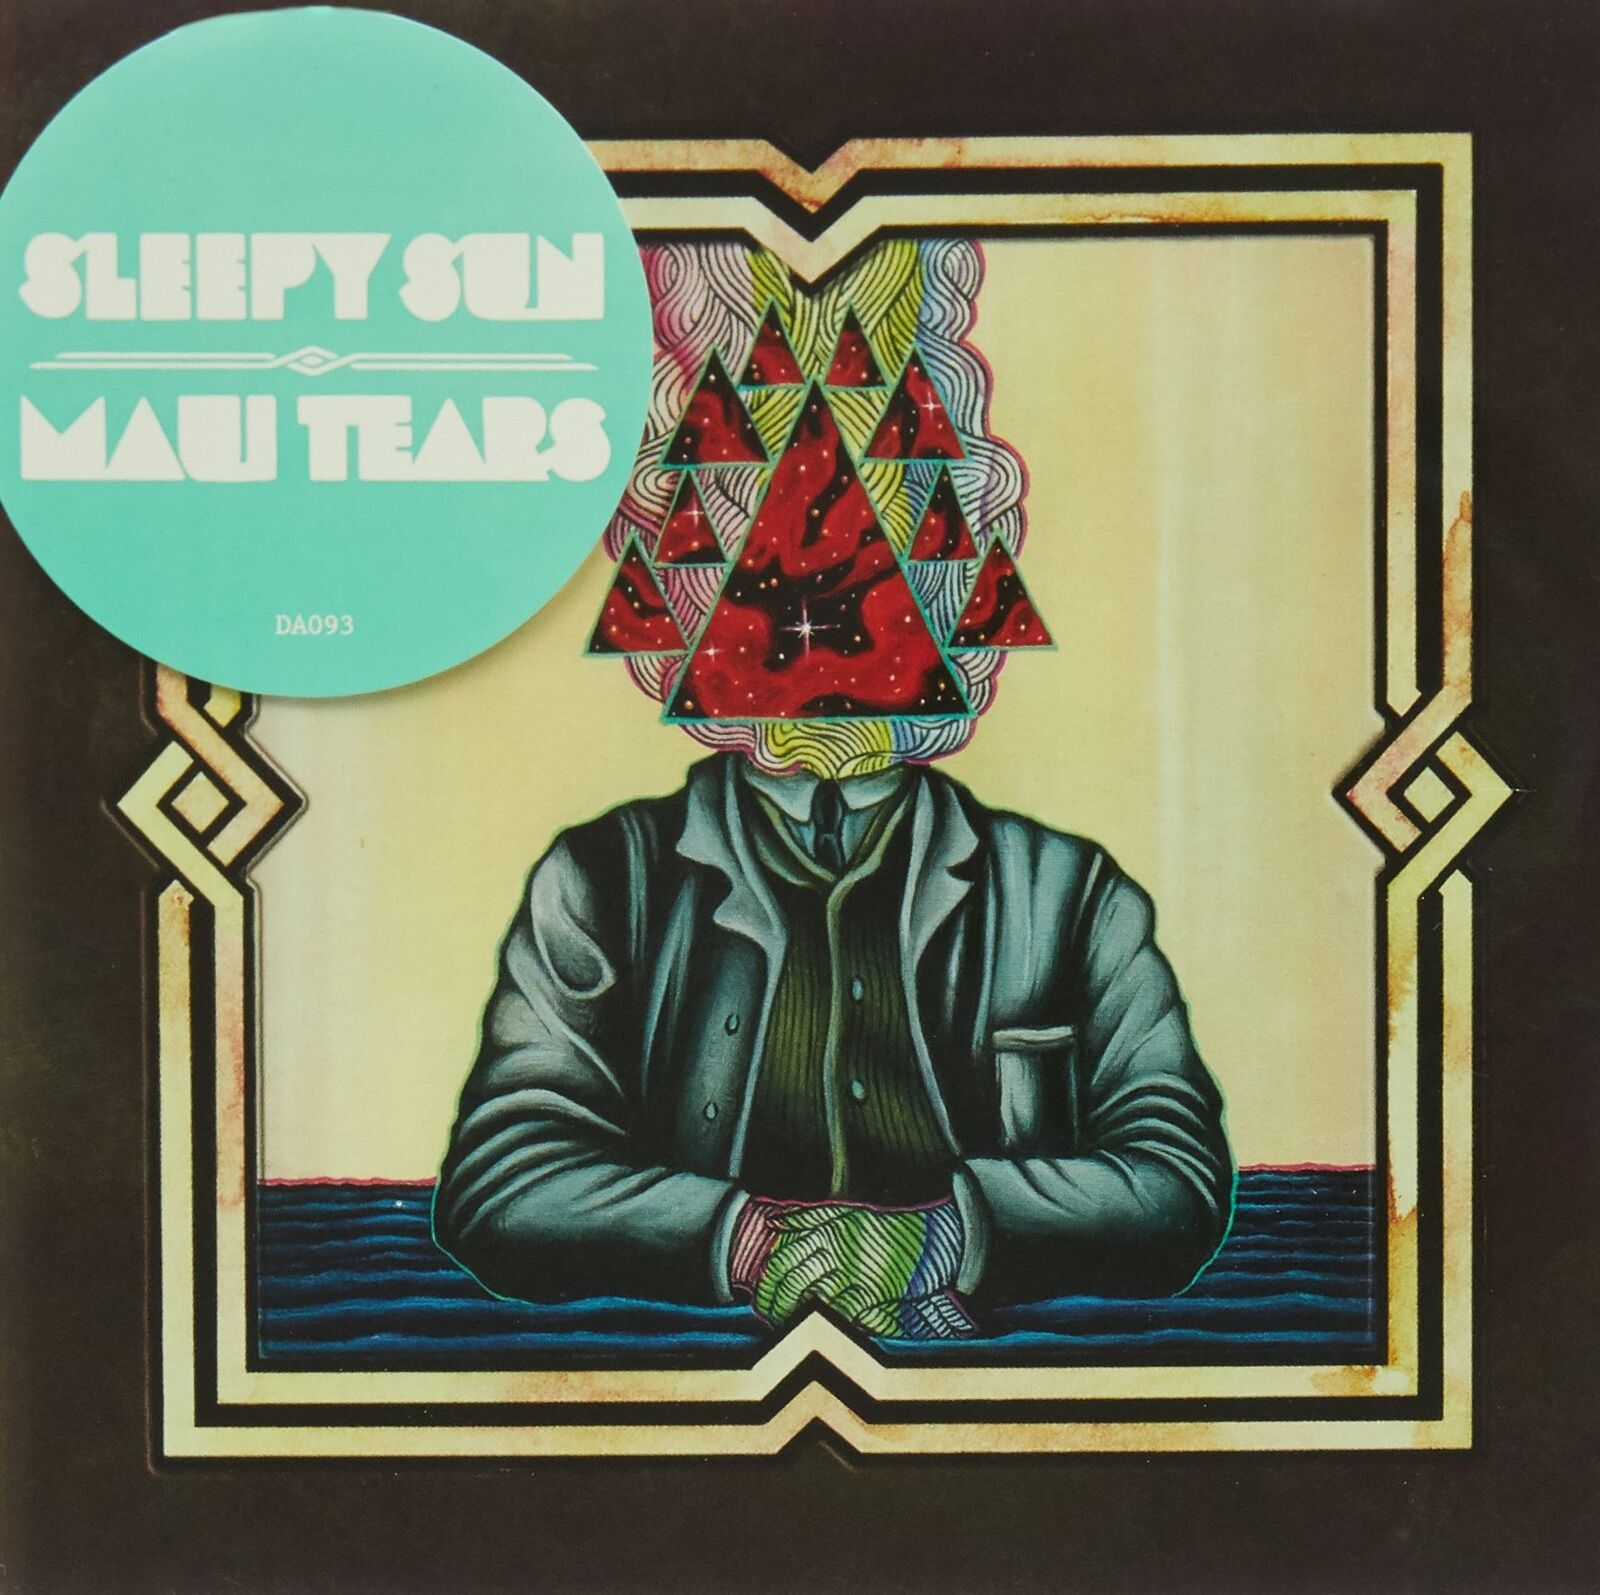 SLEEPY SUN Maui Tears (CD)